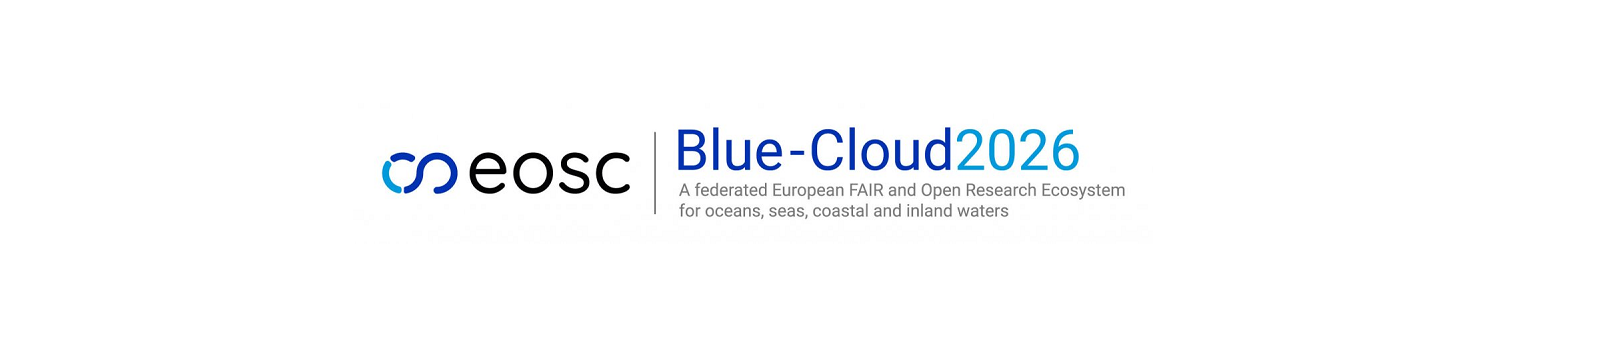 'Blue-Cloud 2026', un progetto UE a guida italiana per migliorare la sostenibilità degli oceani